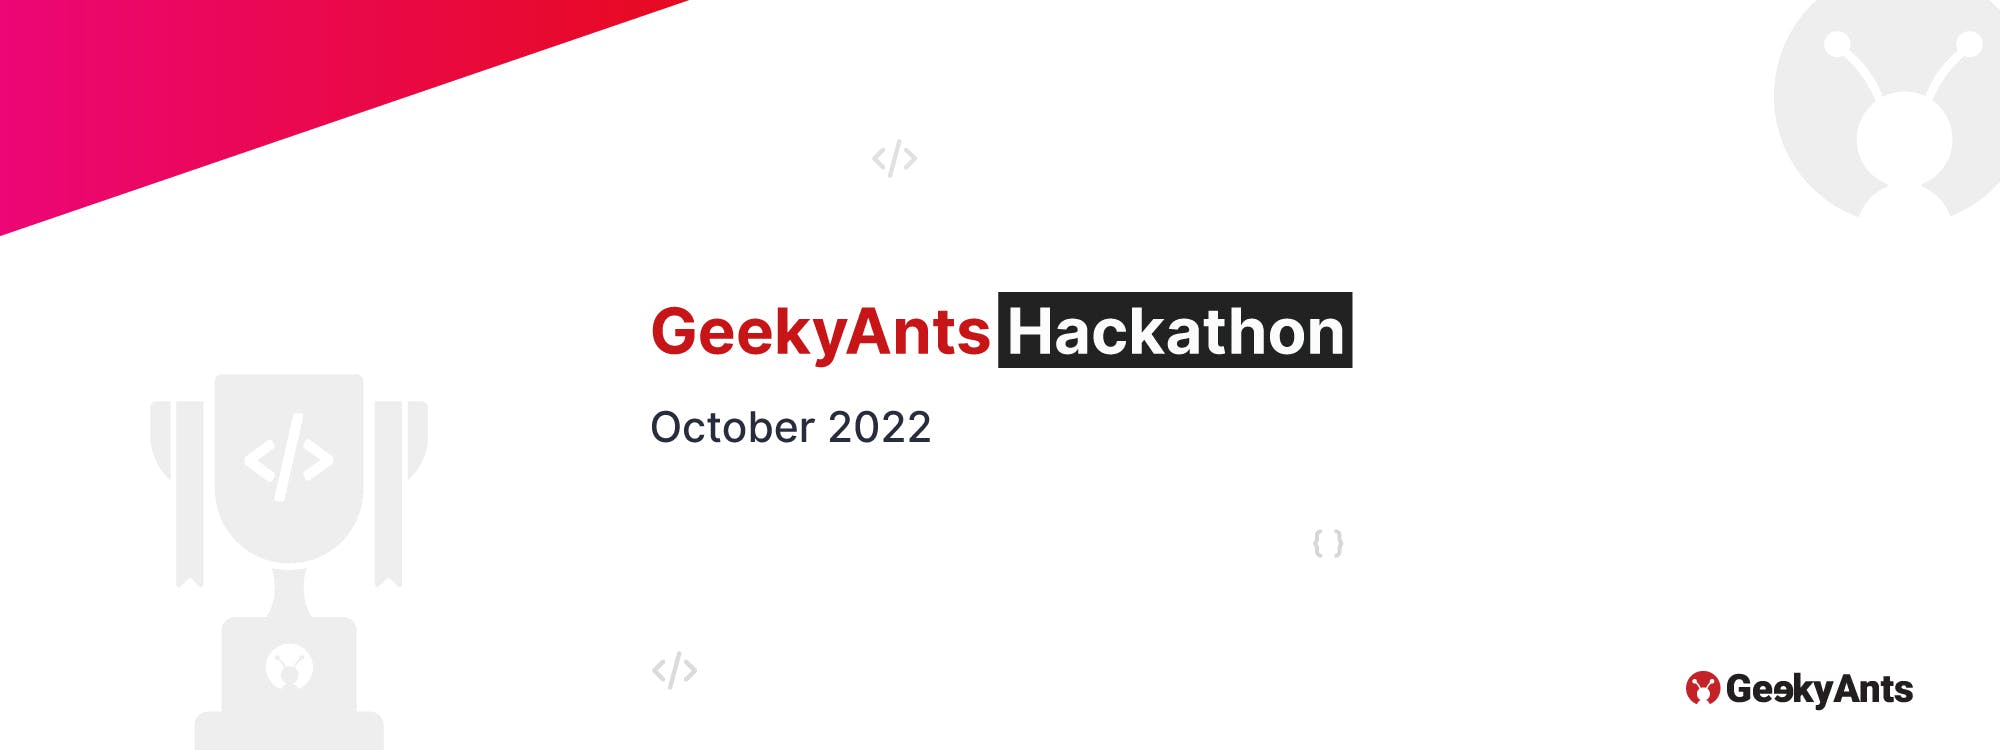 GeekyAnts Hackathon